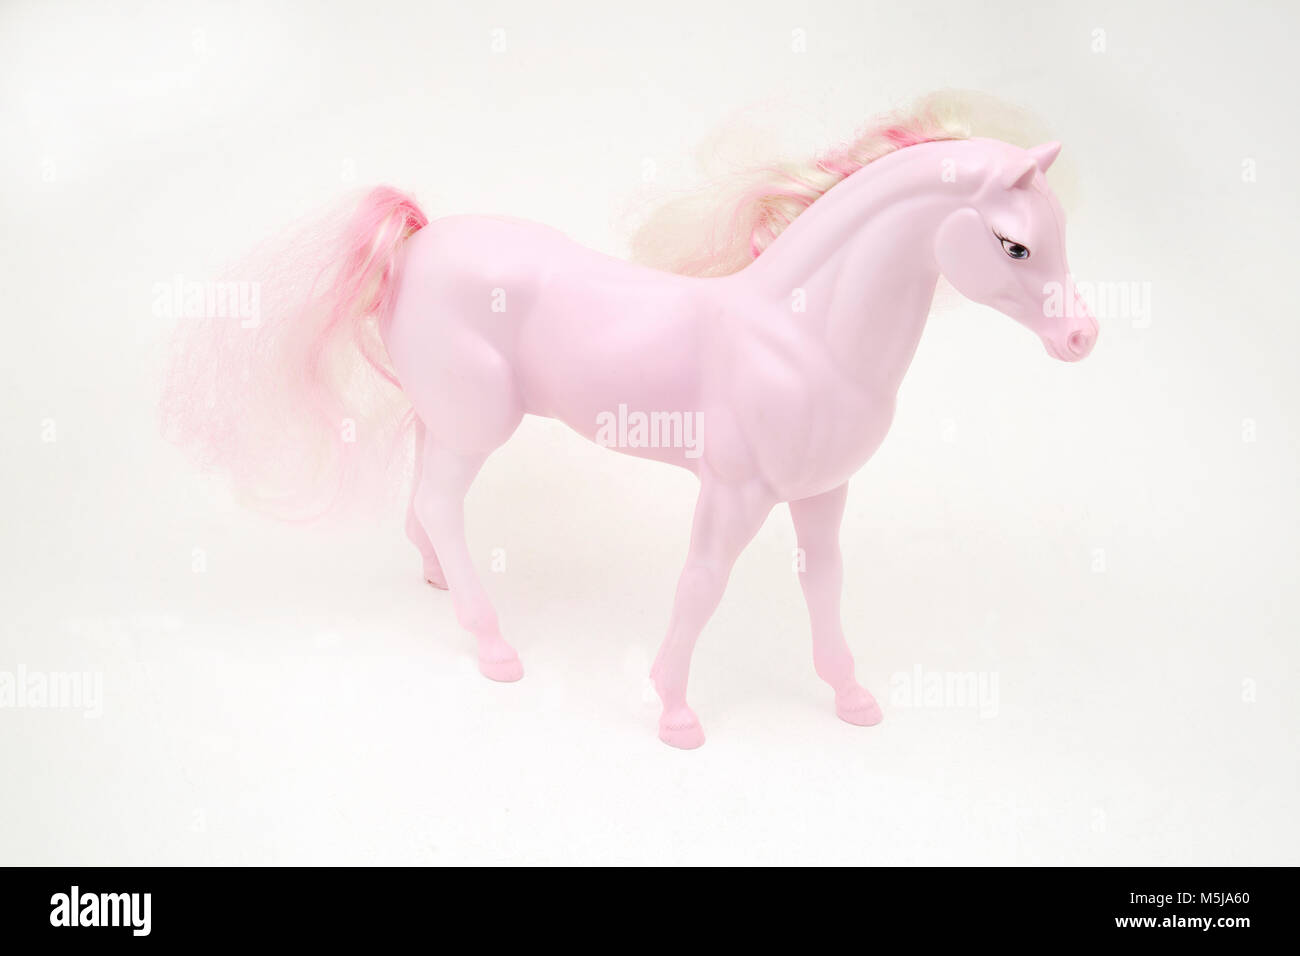 Von Pink Barbie Pferd Mattel Spielzeug Stockfotografie - Alamy